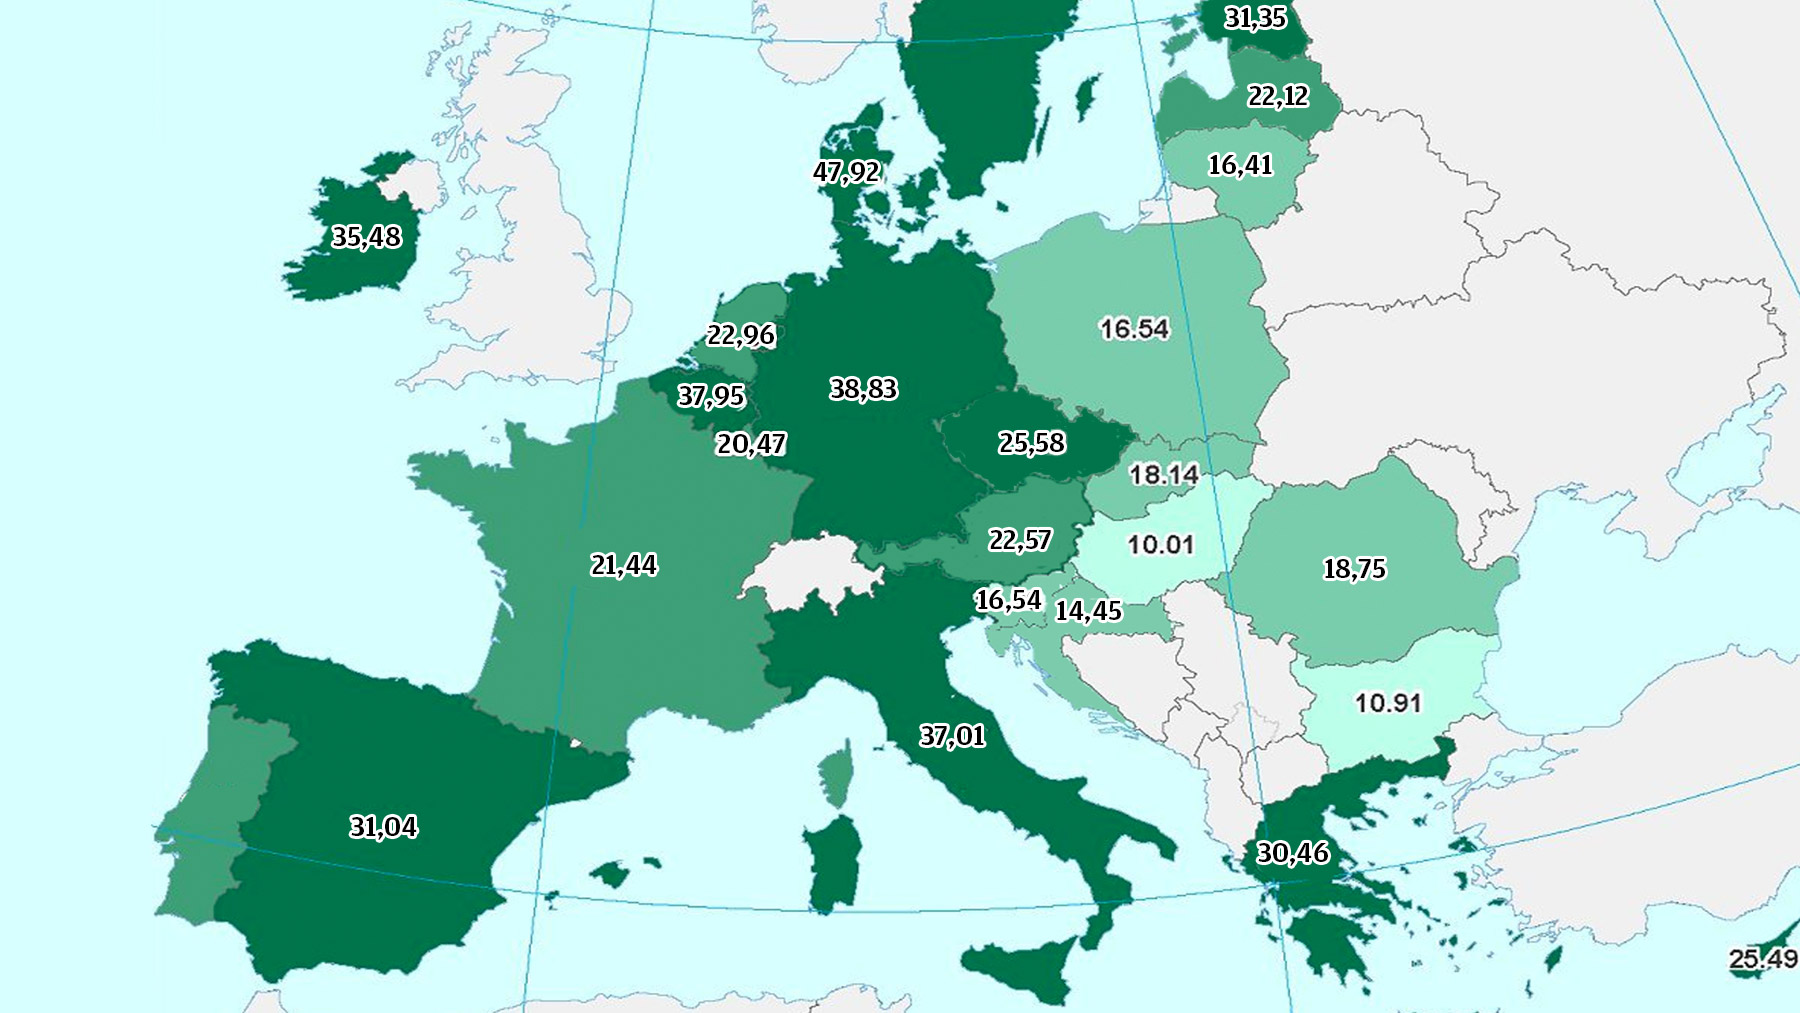 mapa-coste-electricidad-Europa